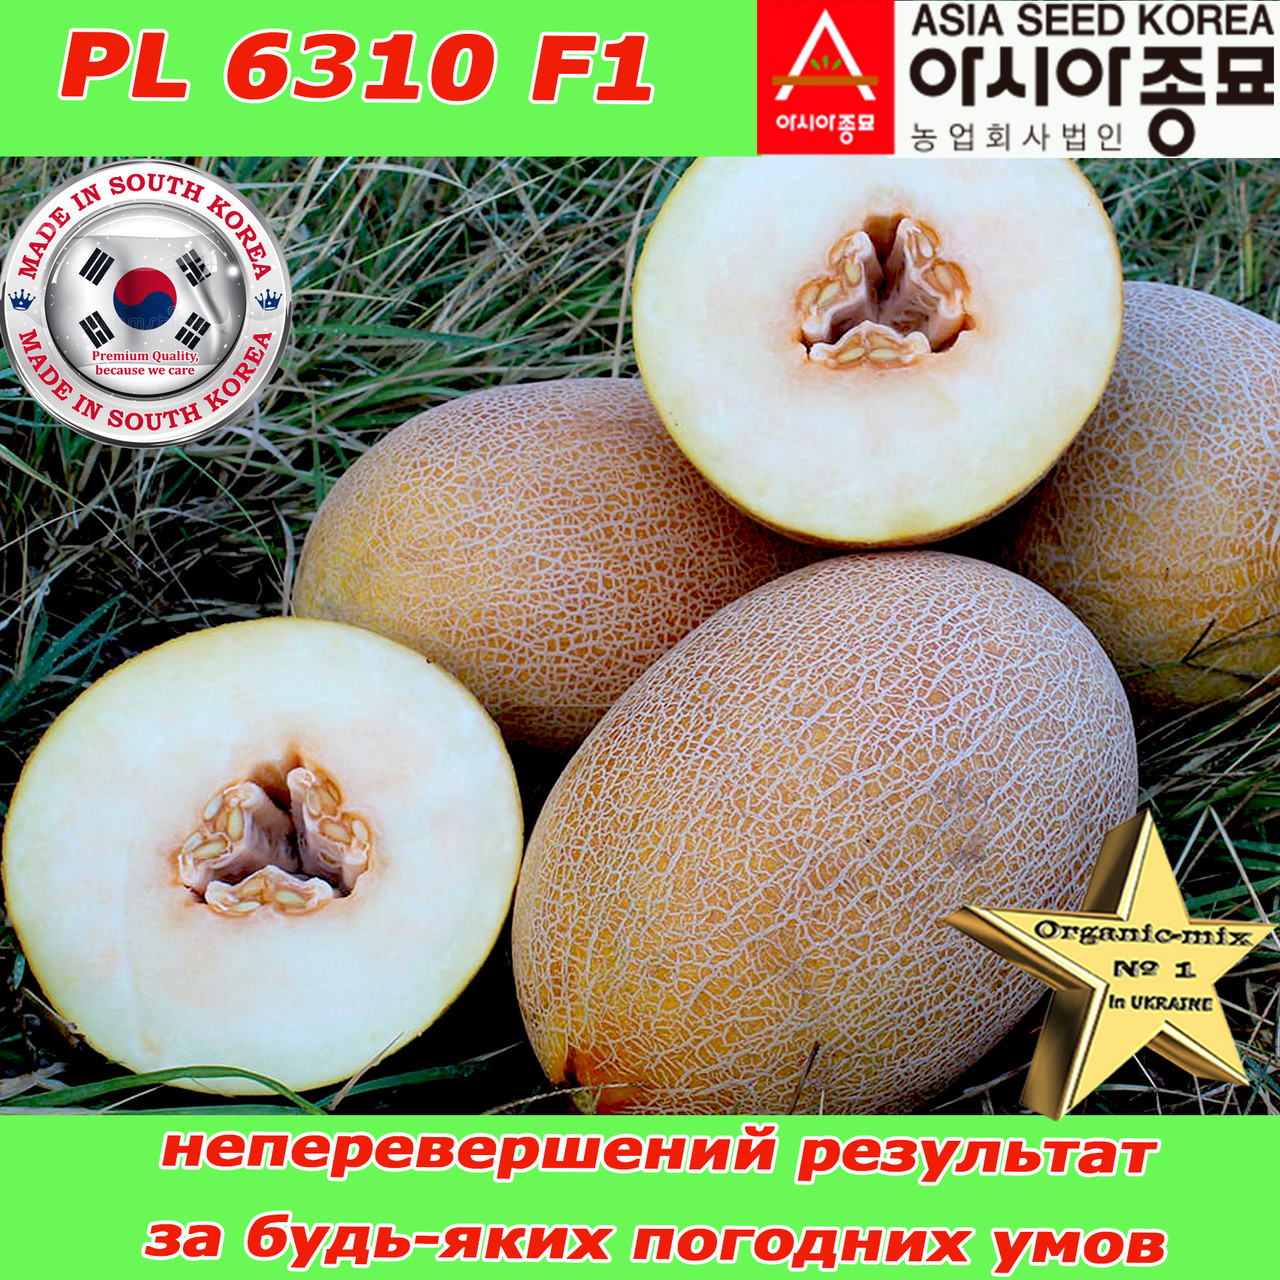 Насіння, диня цукрова PL 6310 F1 500 насінин ТМ Asia Seed (Південна Корея)